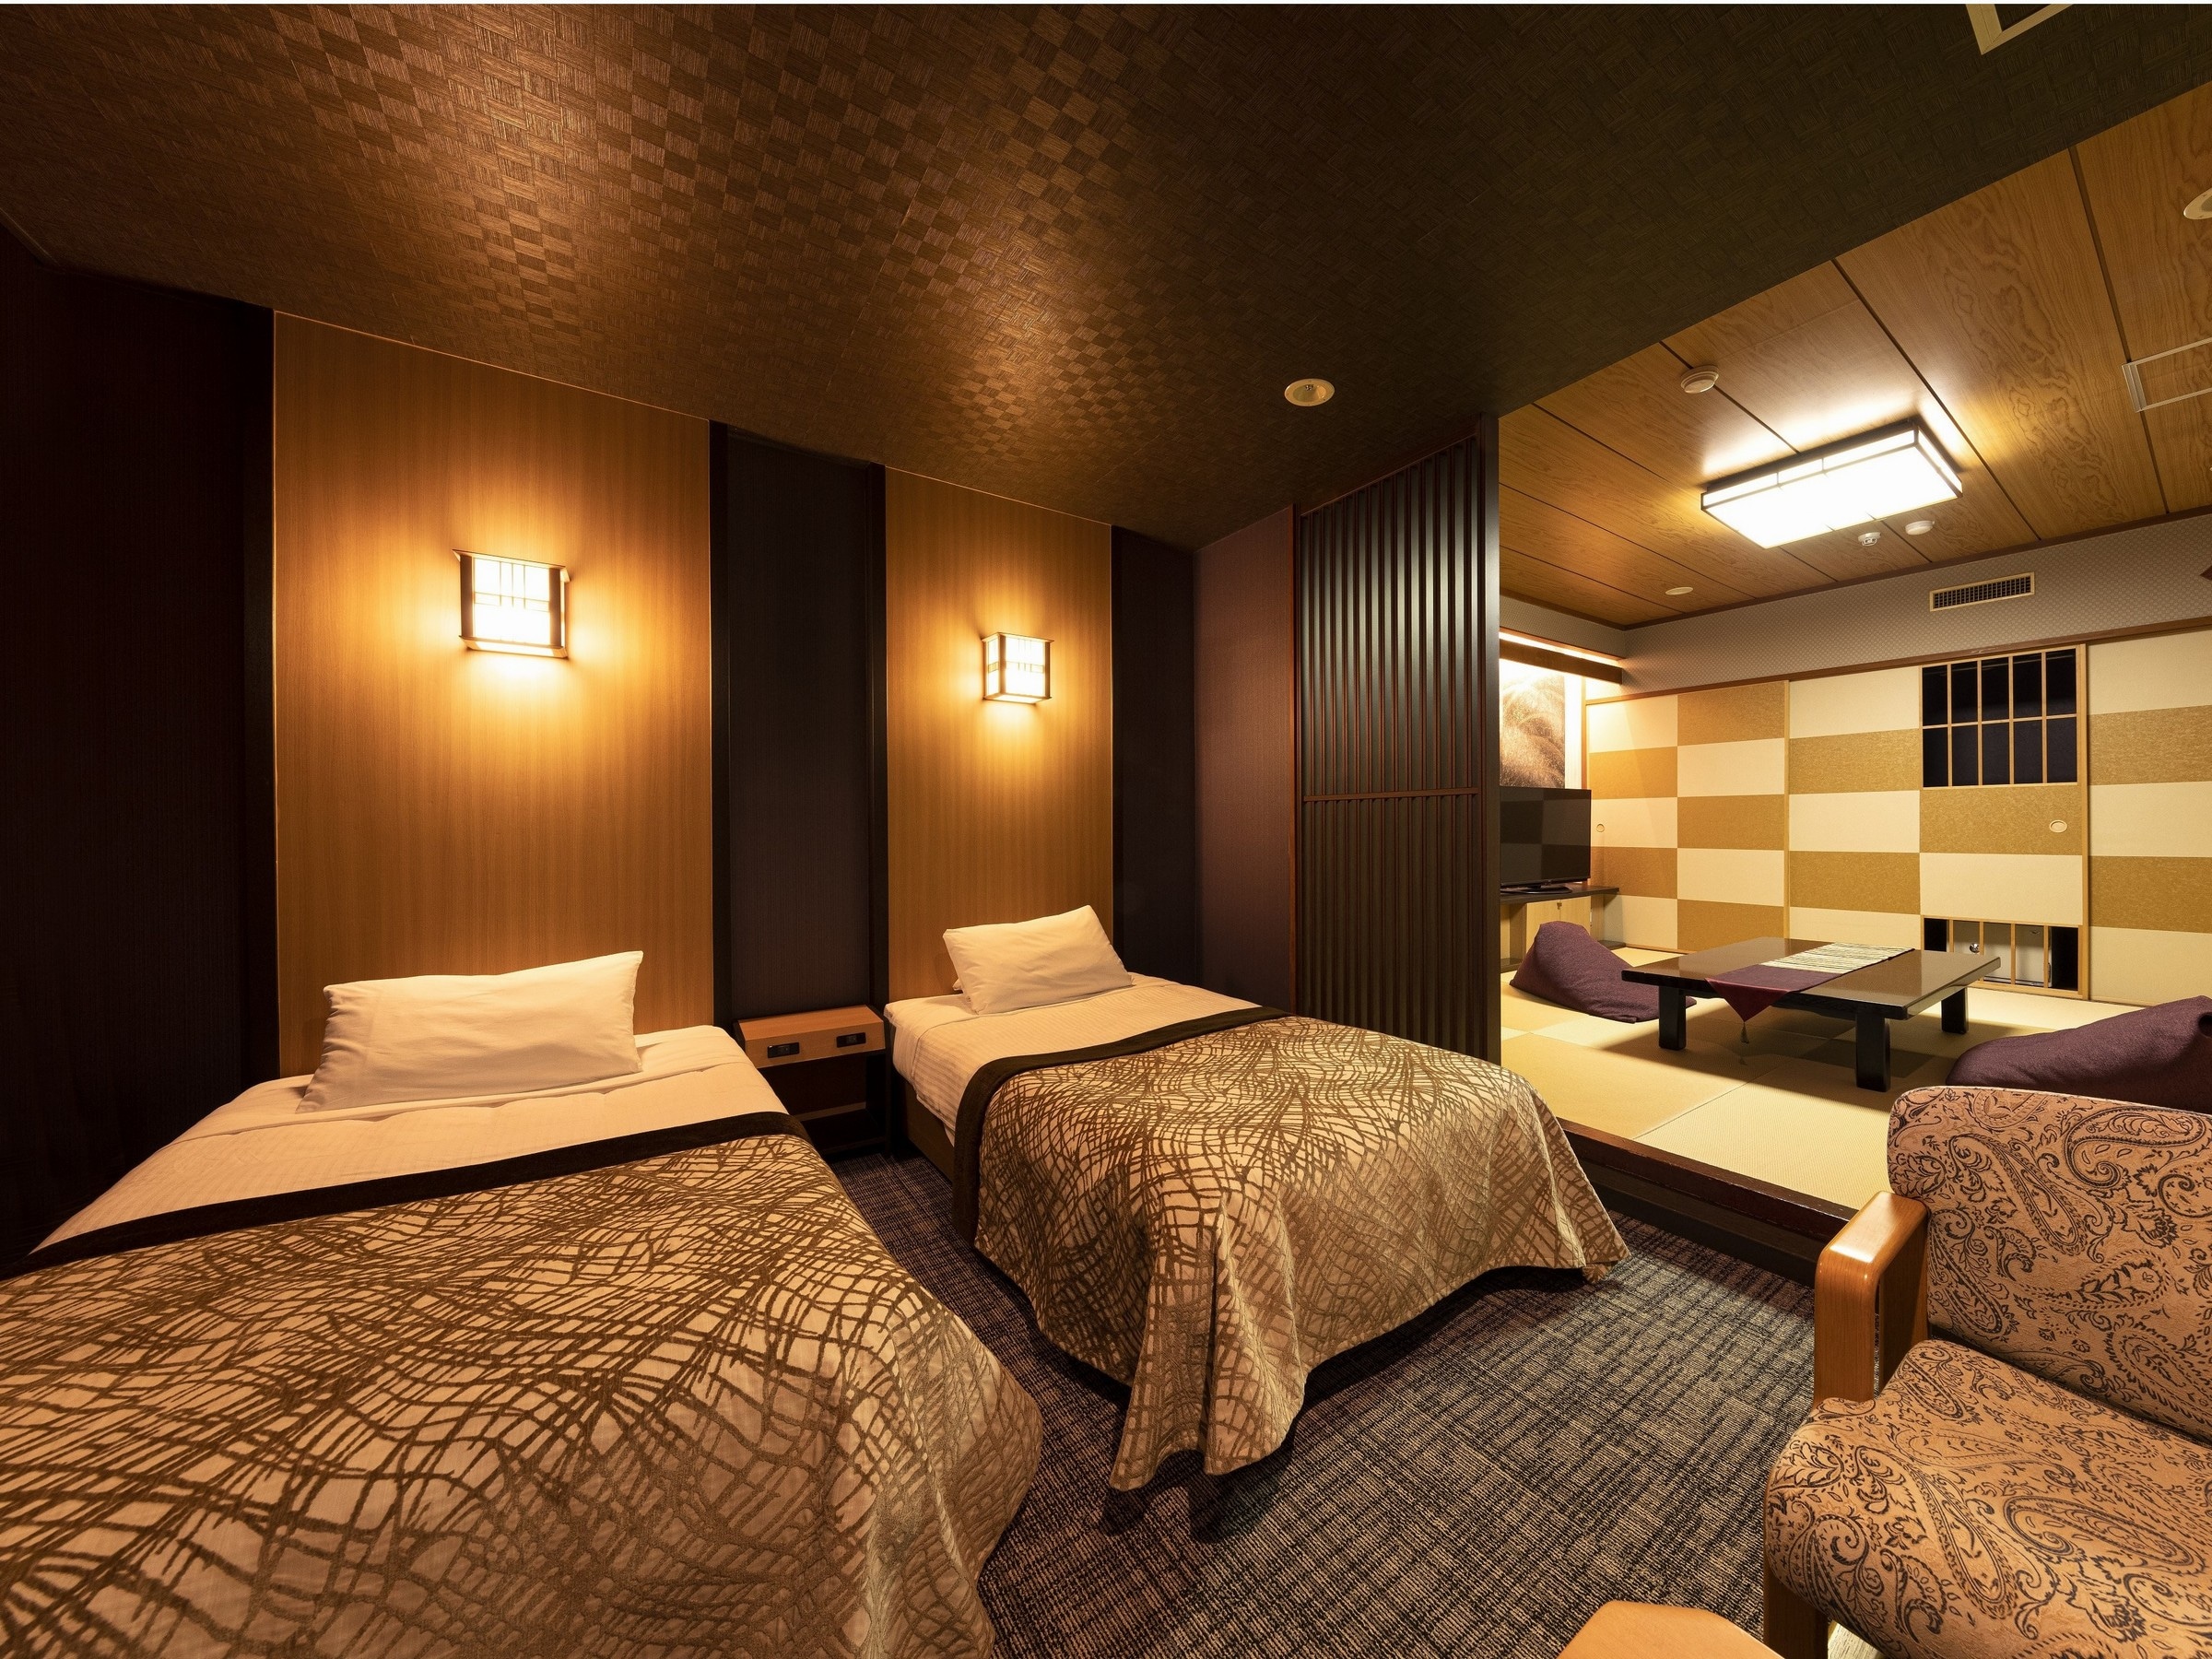 【일본식 방 일례】 침대 2대의 양실+6 다다미 이상의 일본식 방. 객실마다 다른 구조